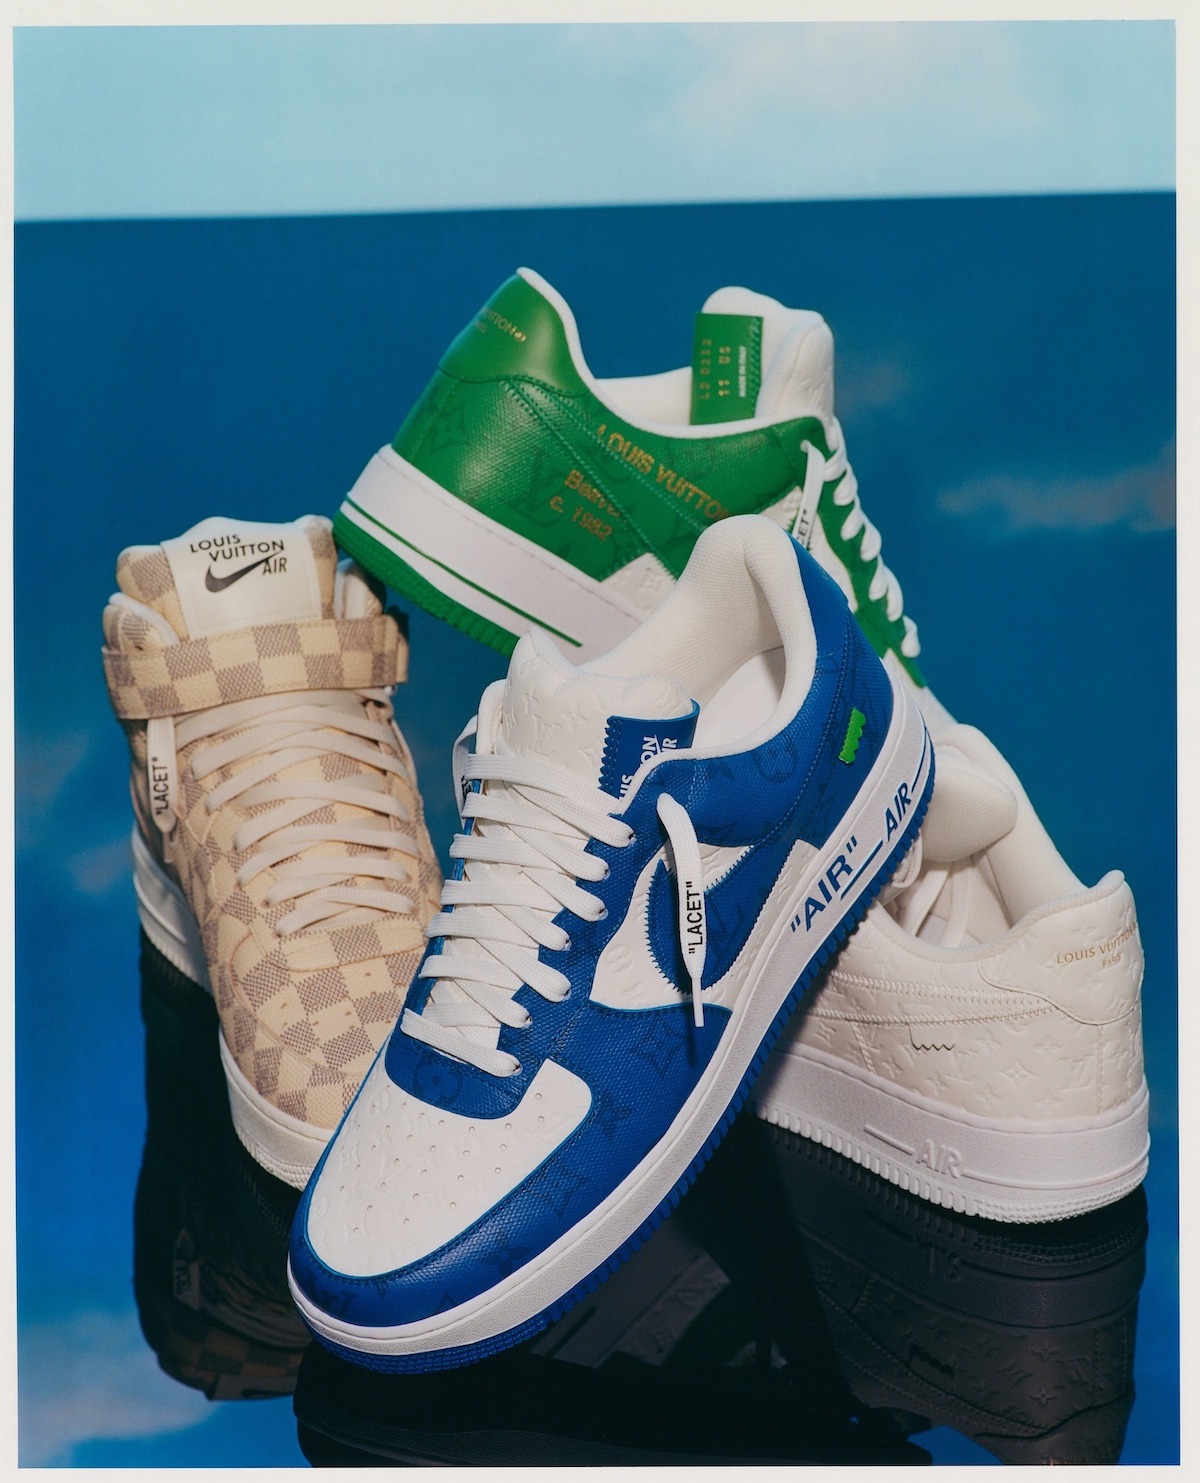 Virgil Abloh's Louis Vuitton x Nike Air Force 1 For Retail? – SNEAKER THRONE